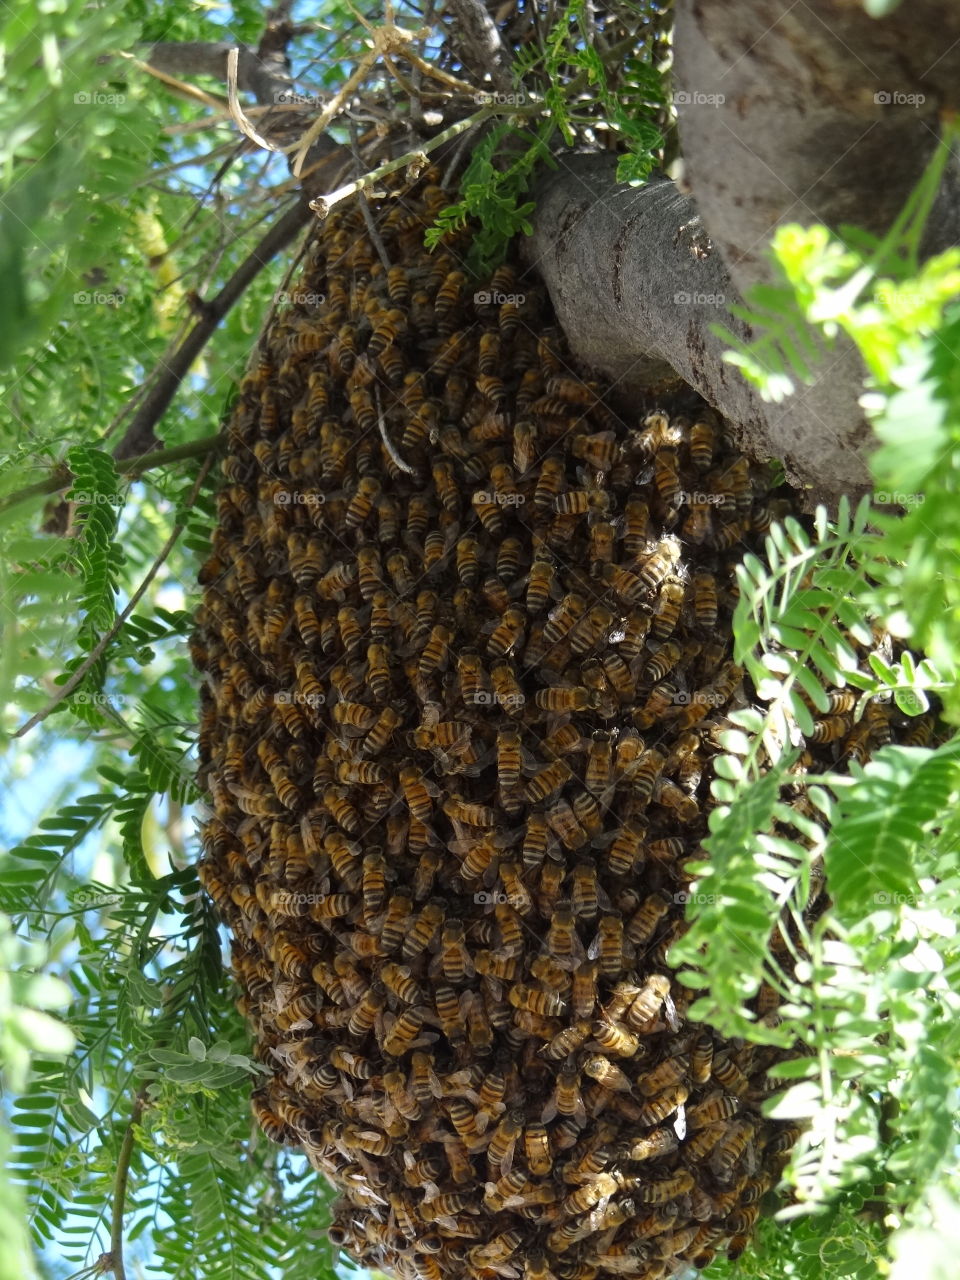 Swarm of Bees in Tucson AZ